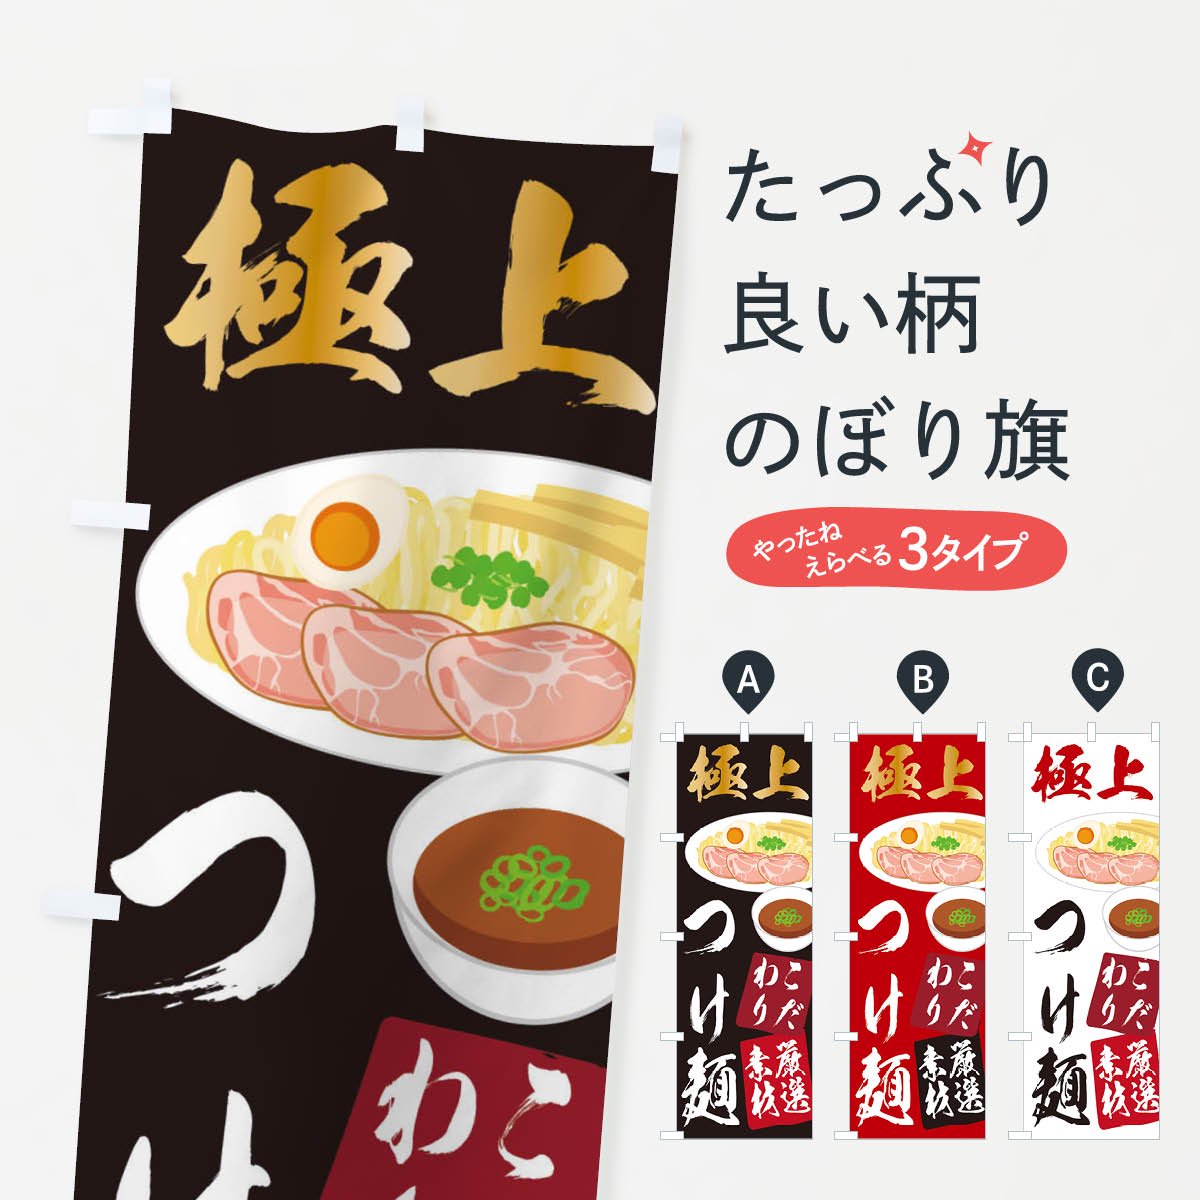 のぼり旗 3枚セット 濃厚つけ麺 NMB-638 - 店舗用品